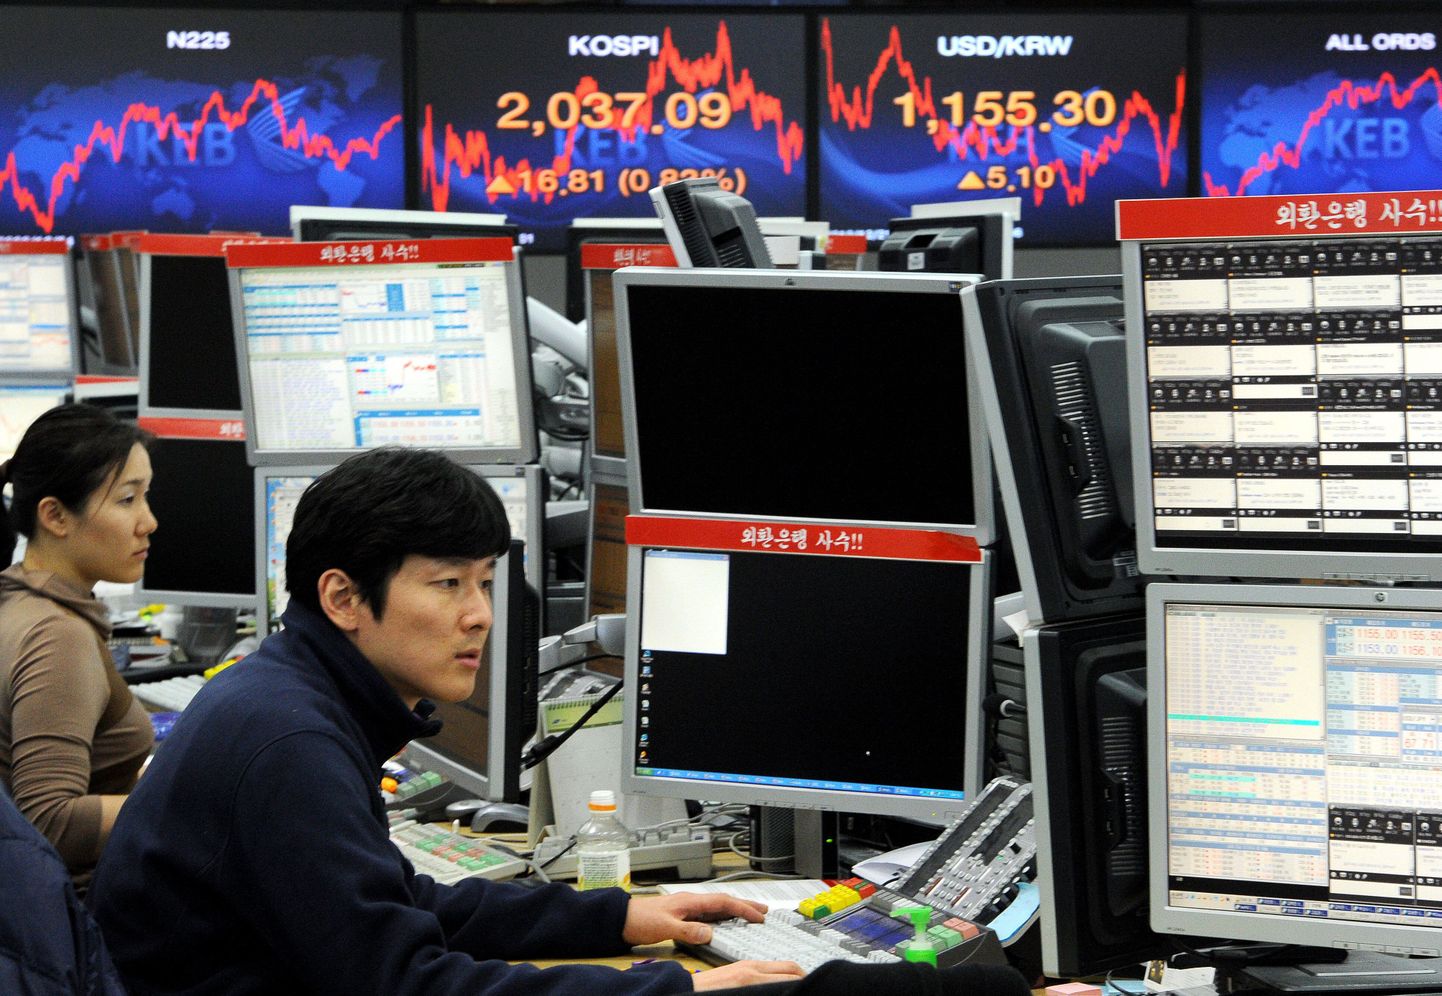 Valuutakauplejad Korea KEB pangas monitoridel kursse jälgimas.